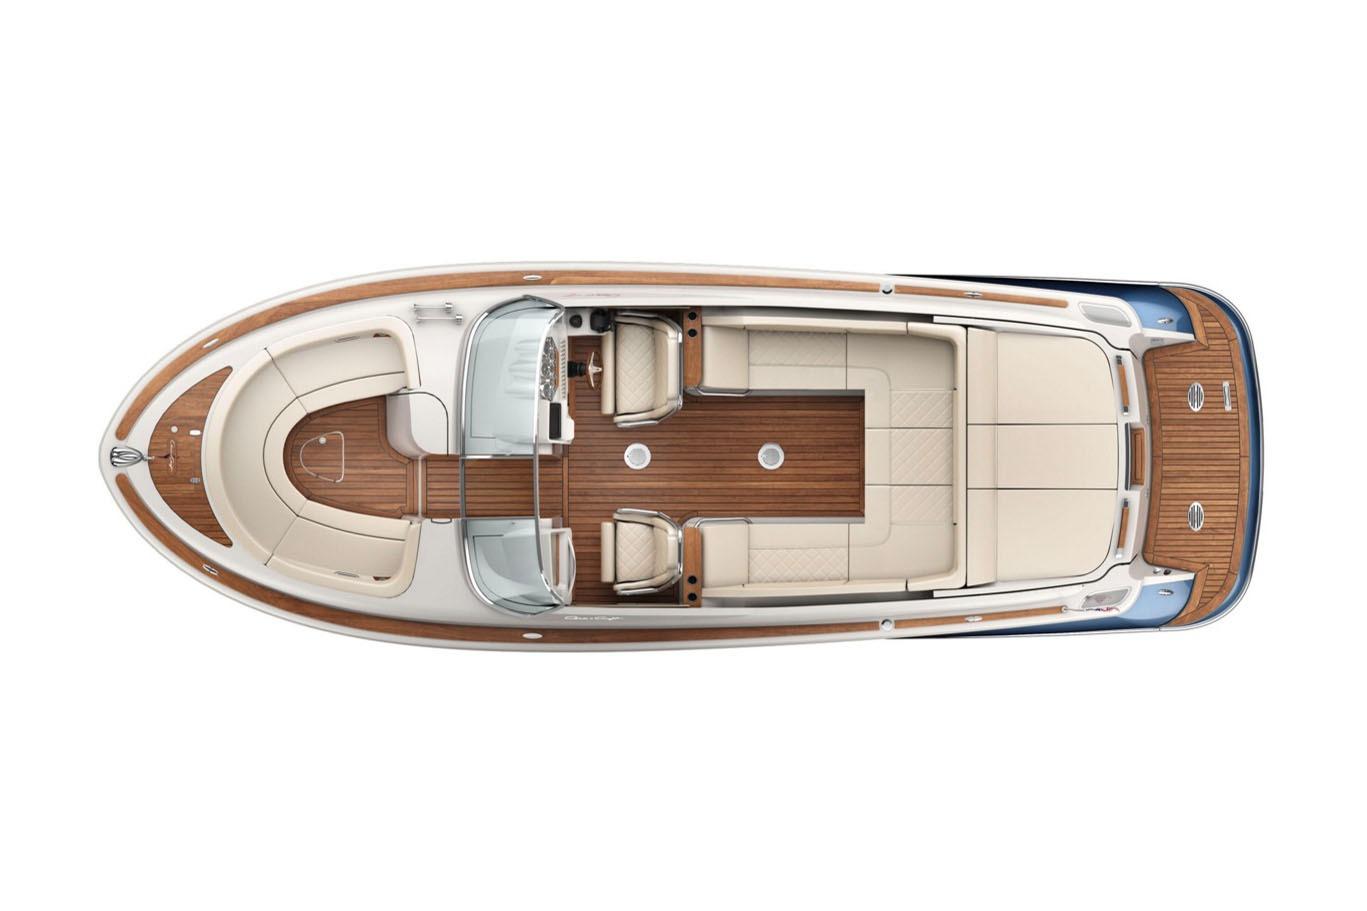 noget Stranden Brudgom Yacht for Sale | 30 Chris-craft Yachts Freeport, ME | Denison Yacht Sales